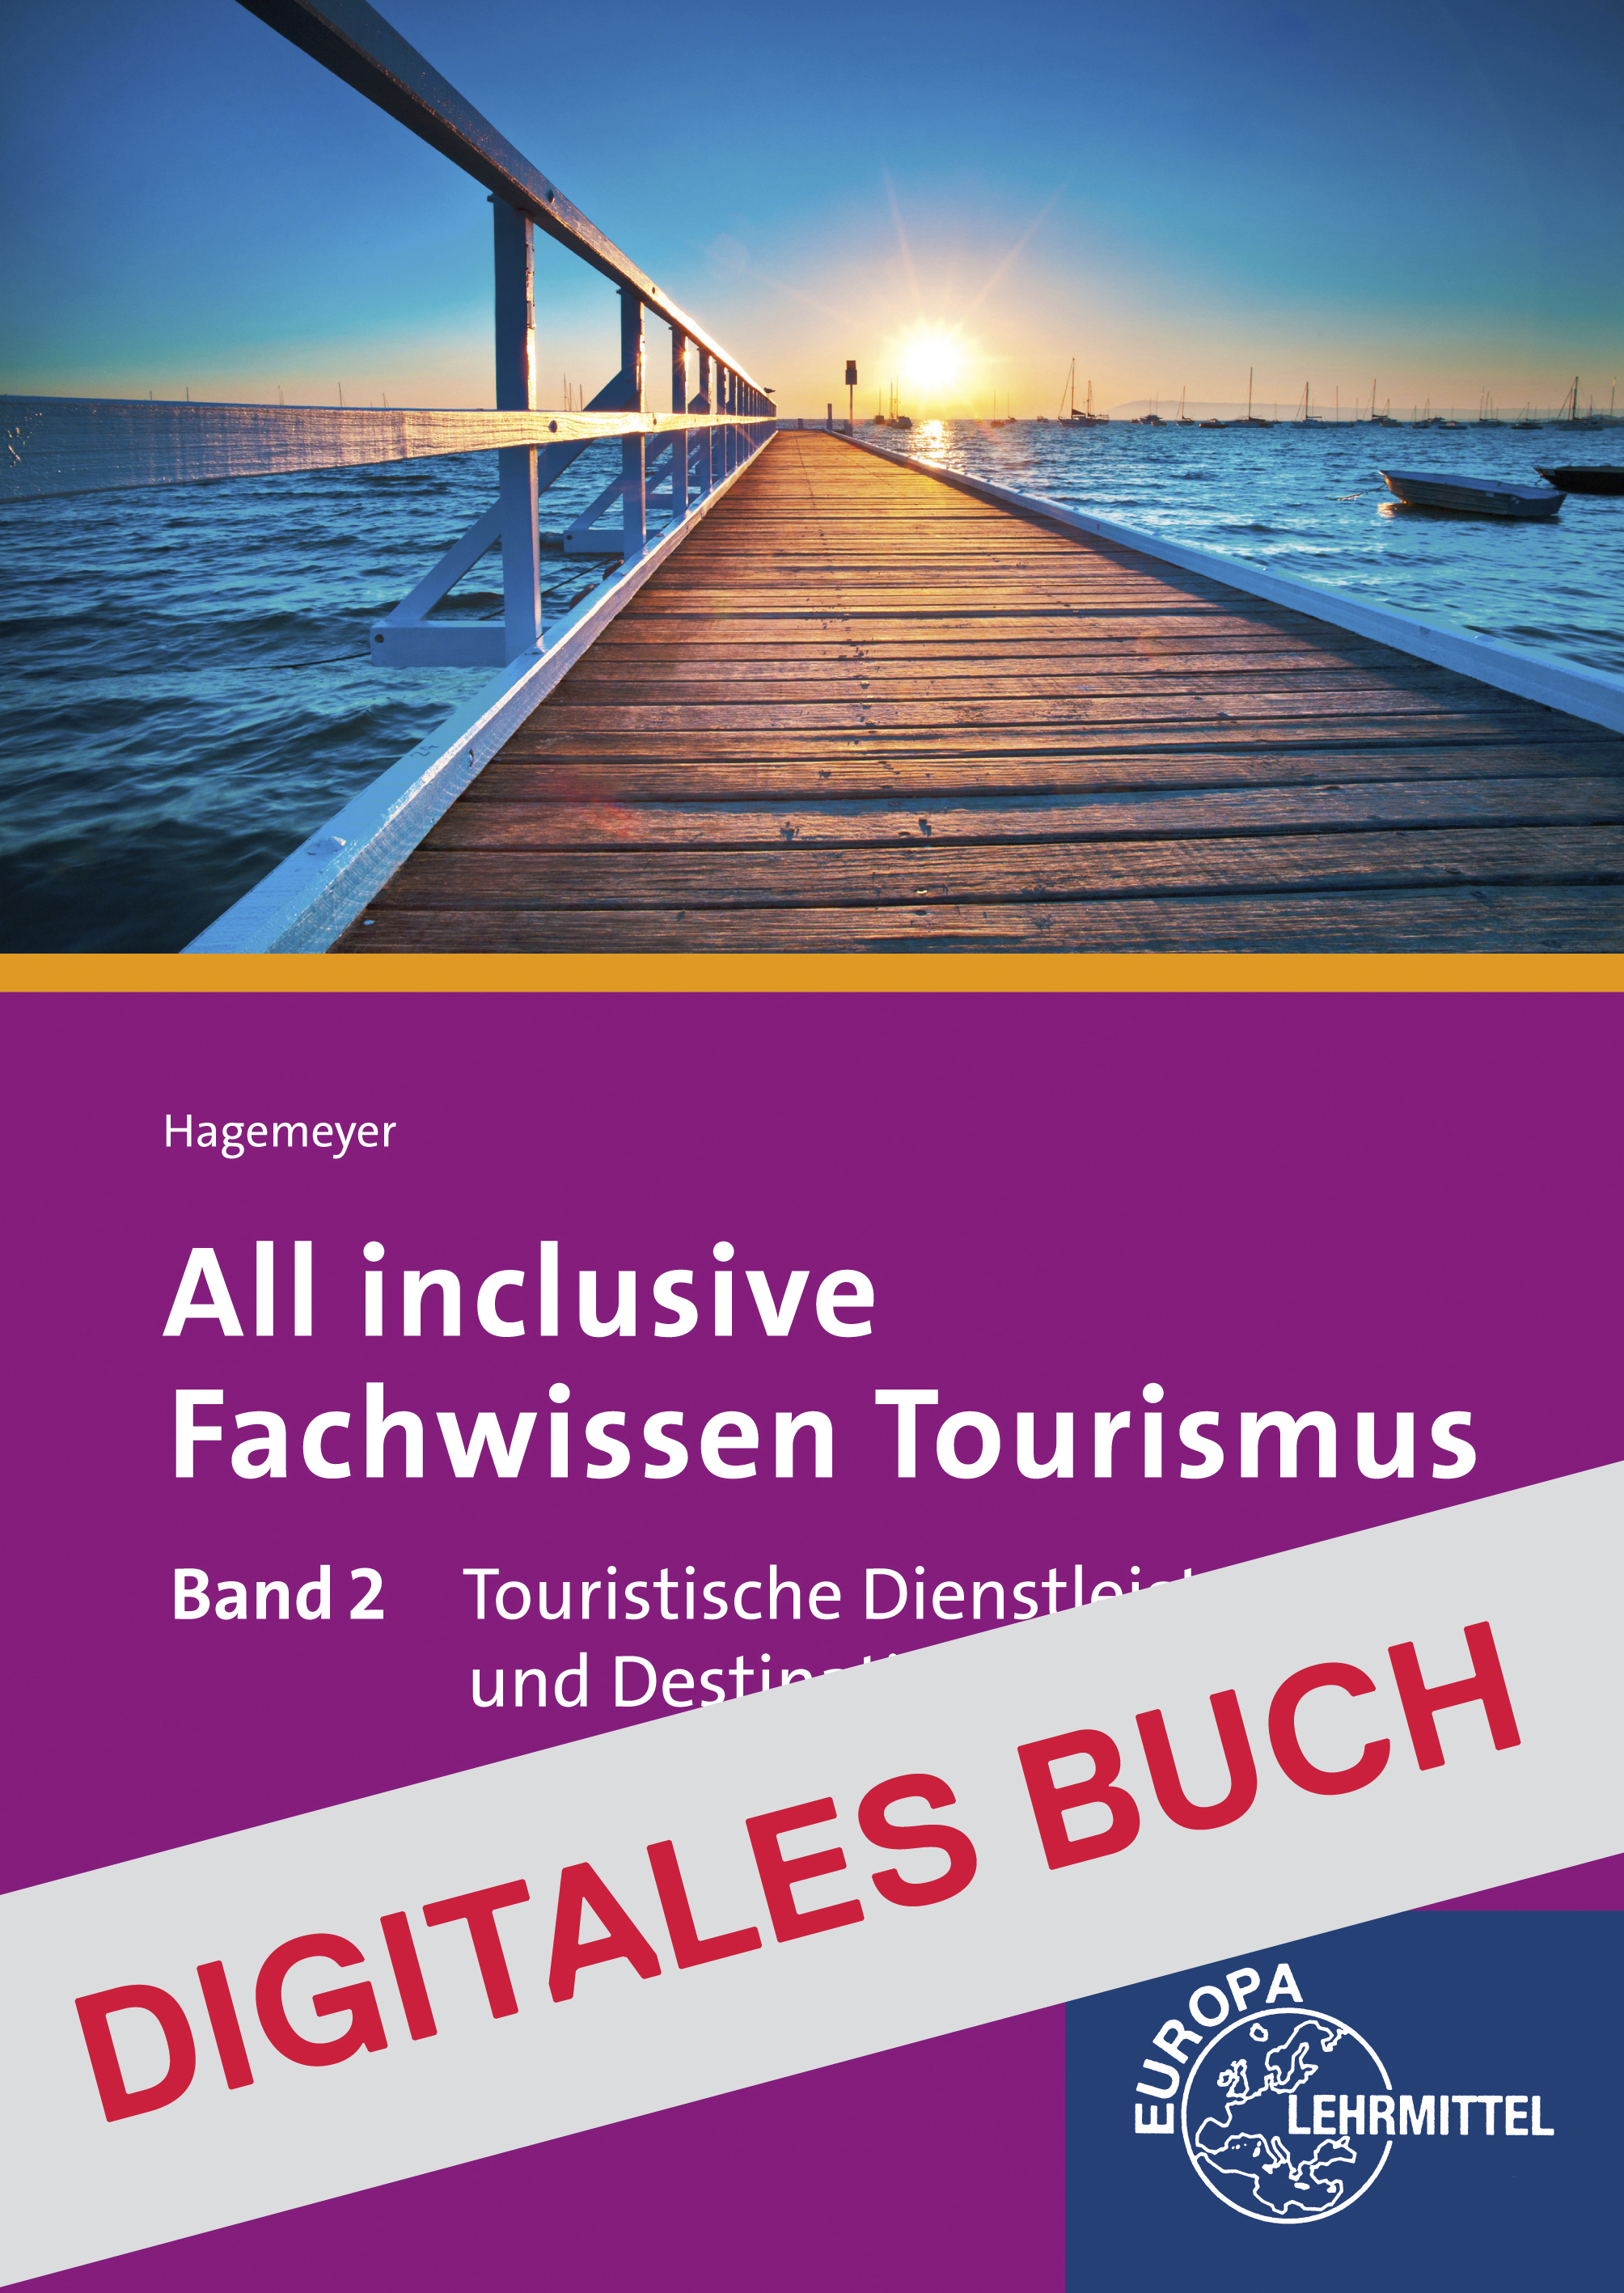 All inclusive - Fachwissen Tourismus Band 2 -Digitales Buch